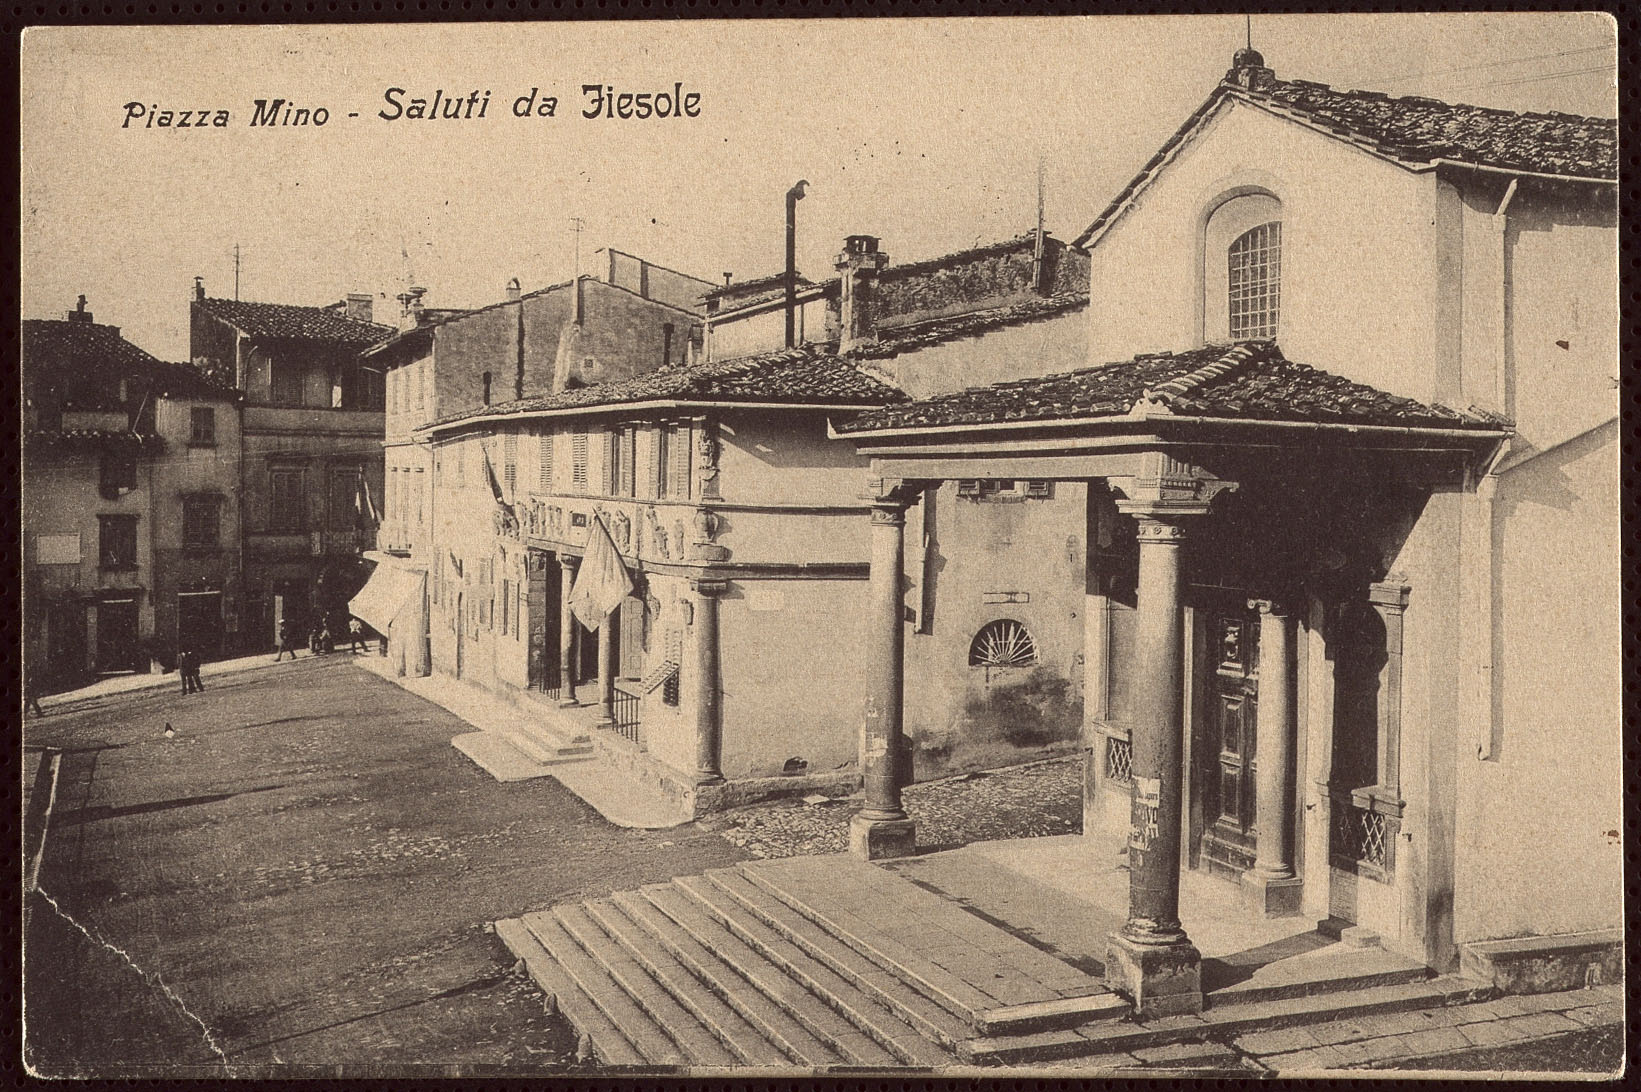 Archivio comunale di Fiesole, fondo cartoline antiche